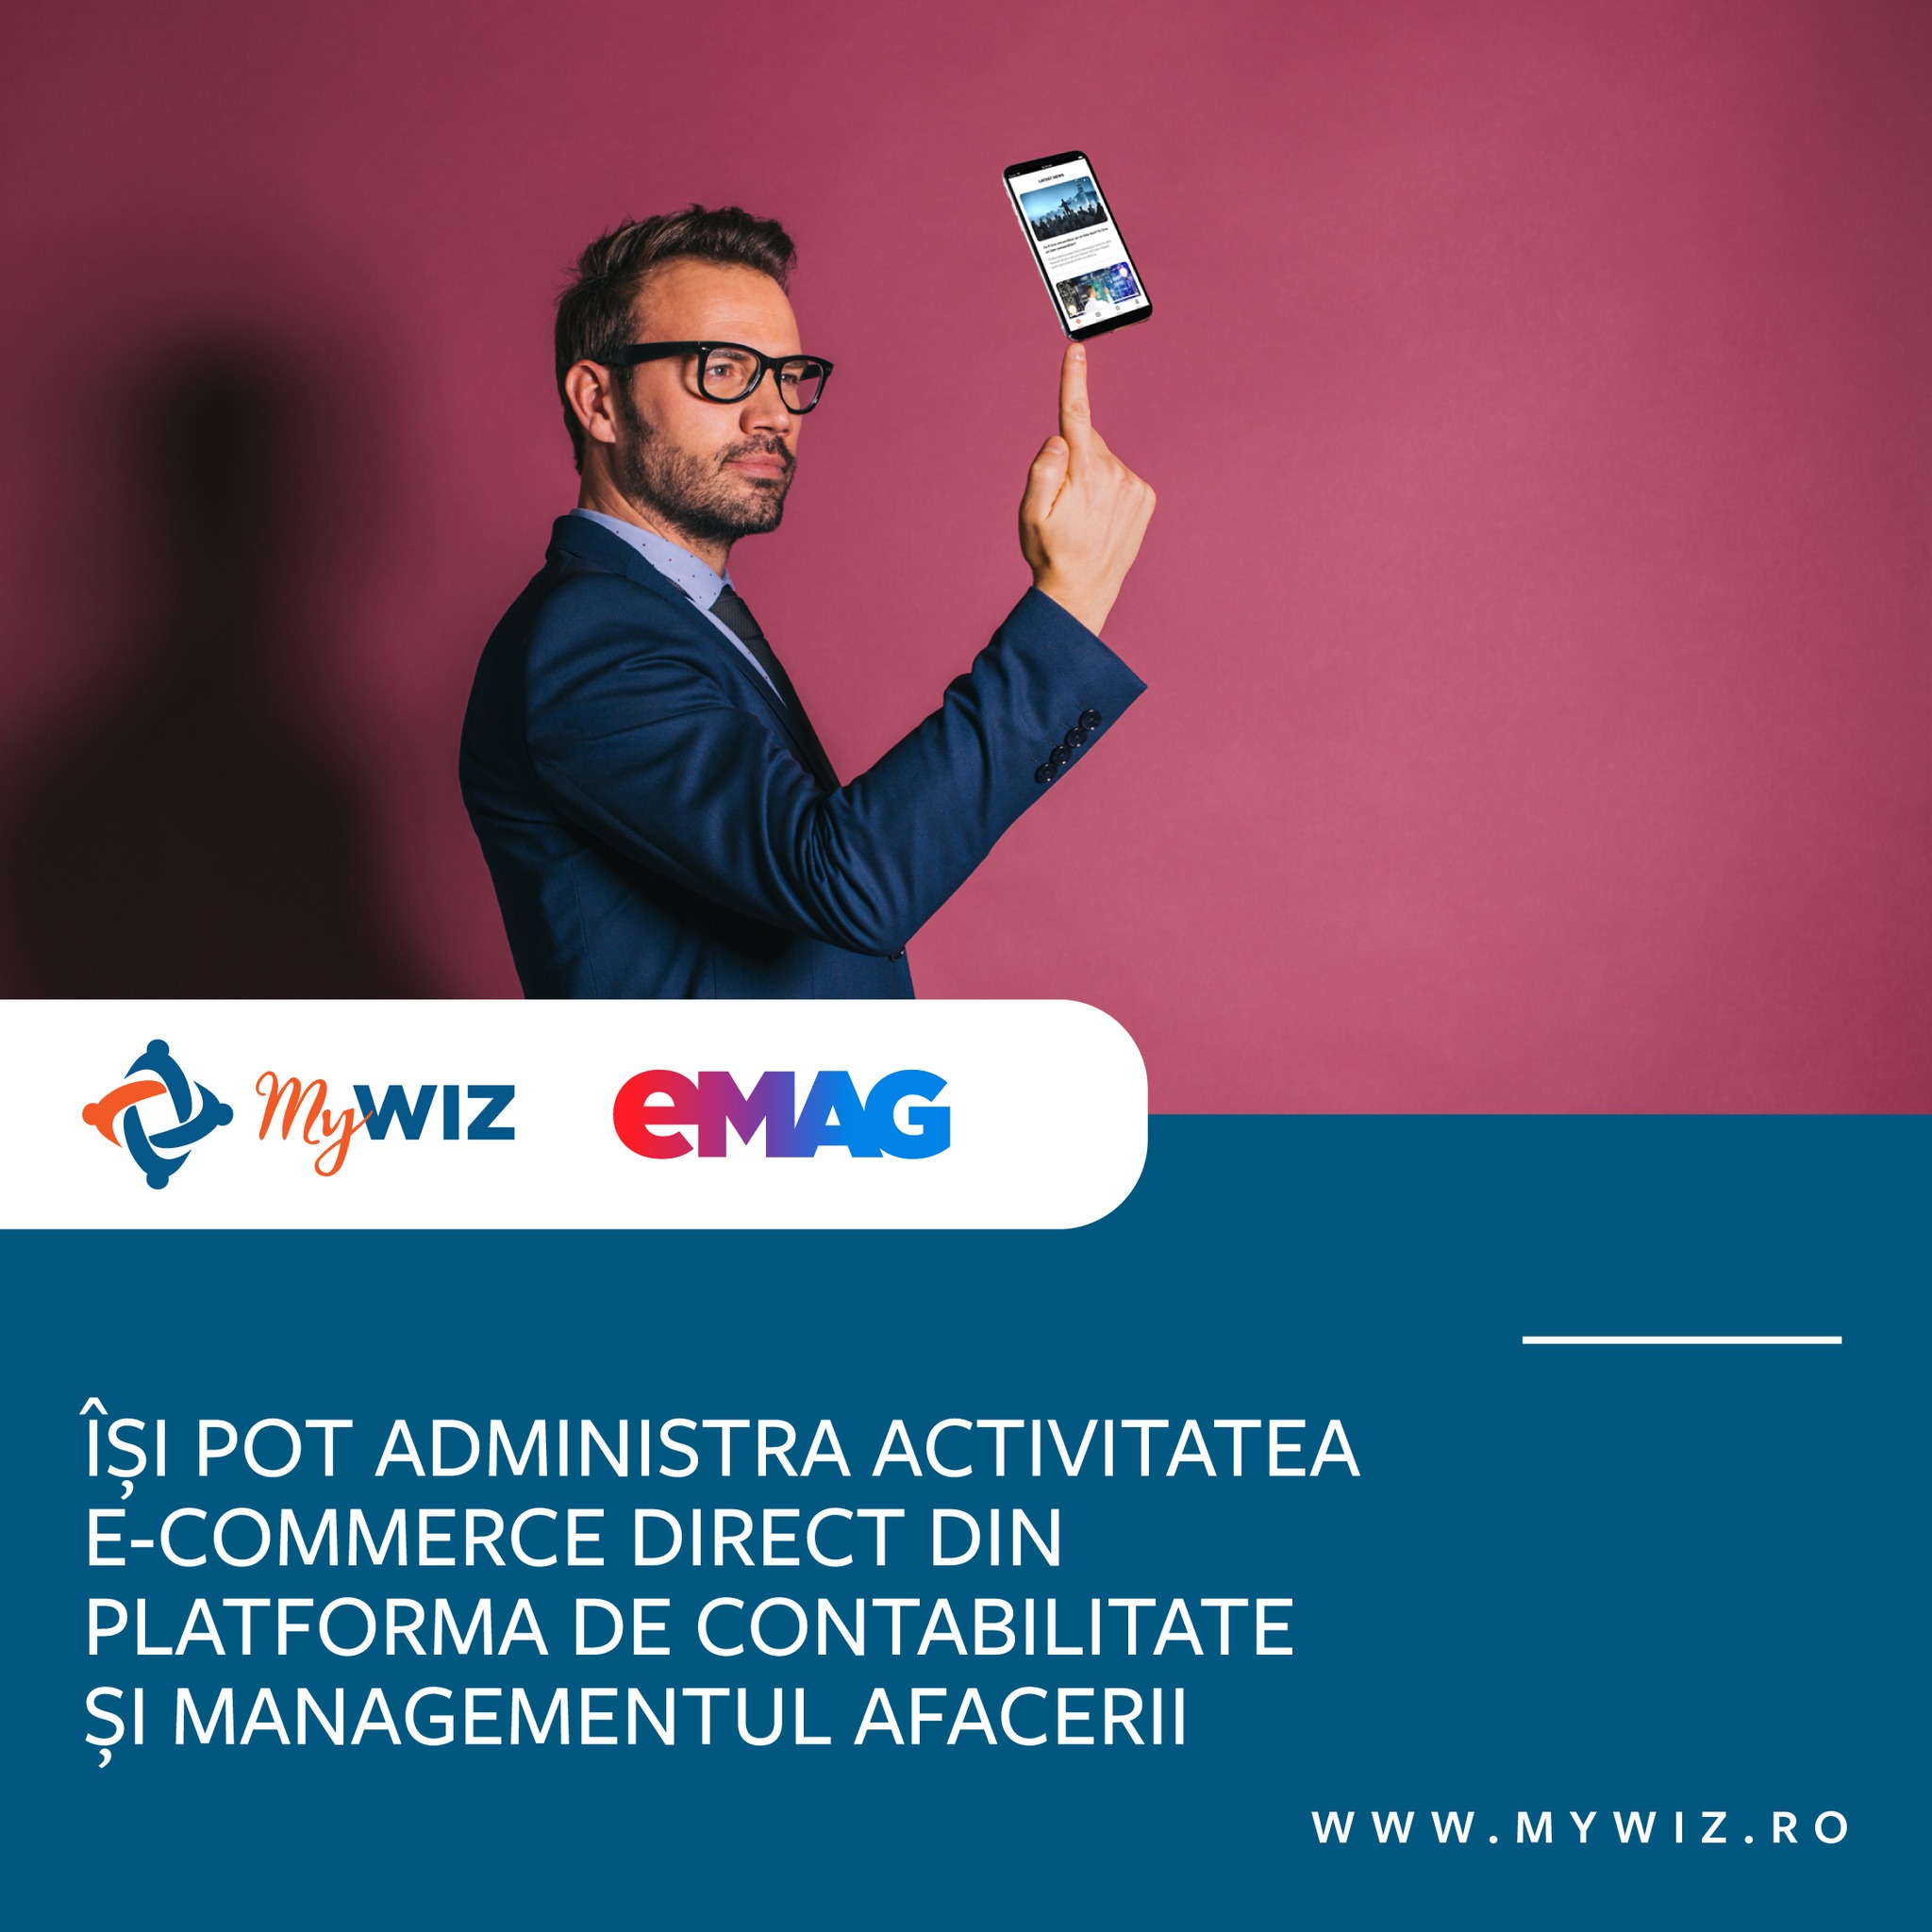 Wizrom integrează soluția MyWiz cu eMAG Marketplace pentru eficientizarea proceselor